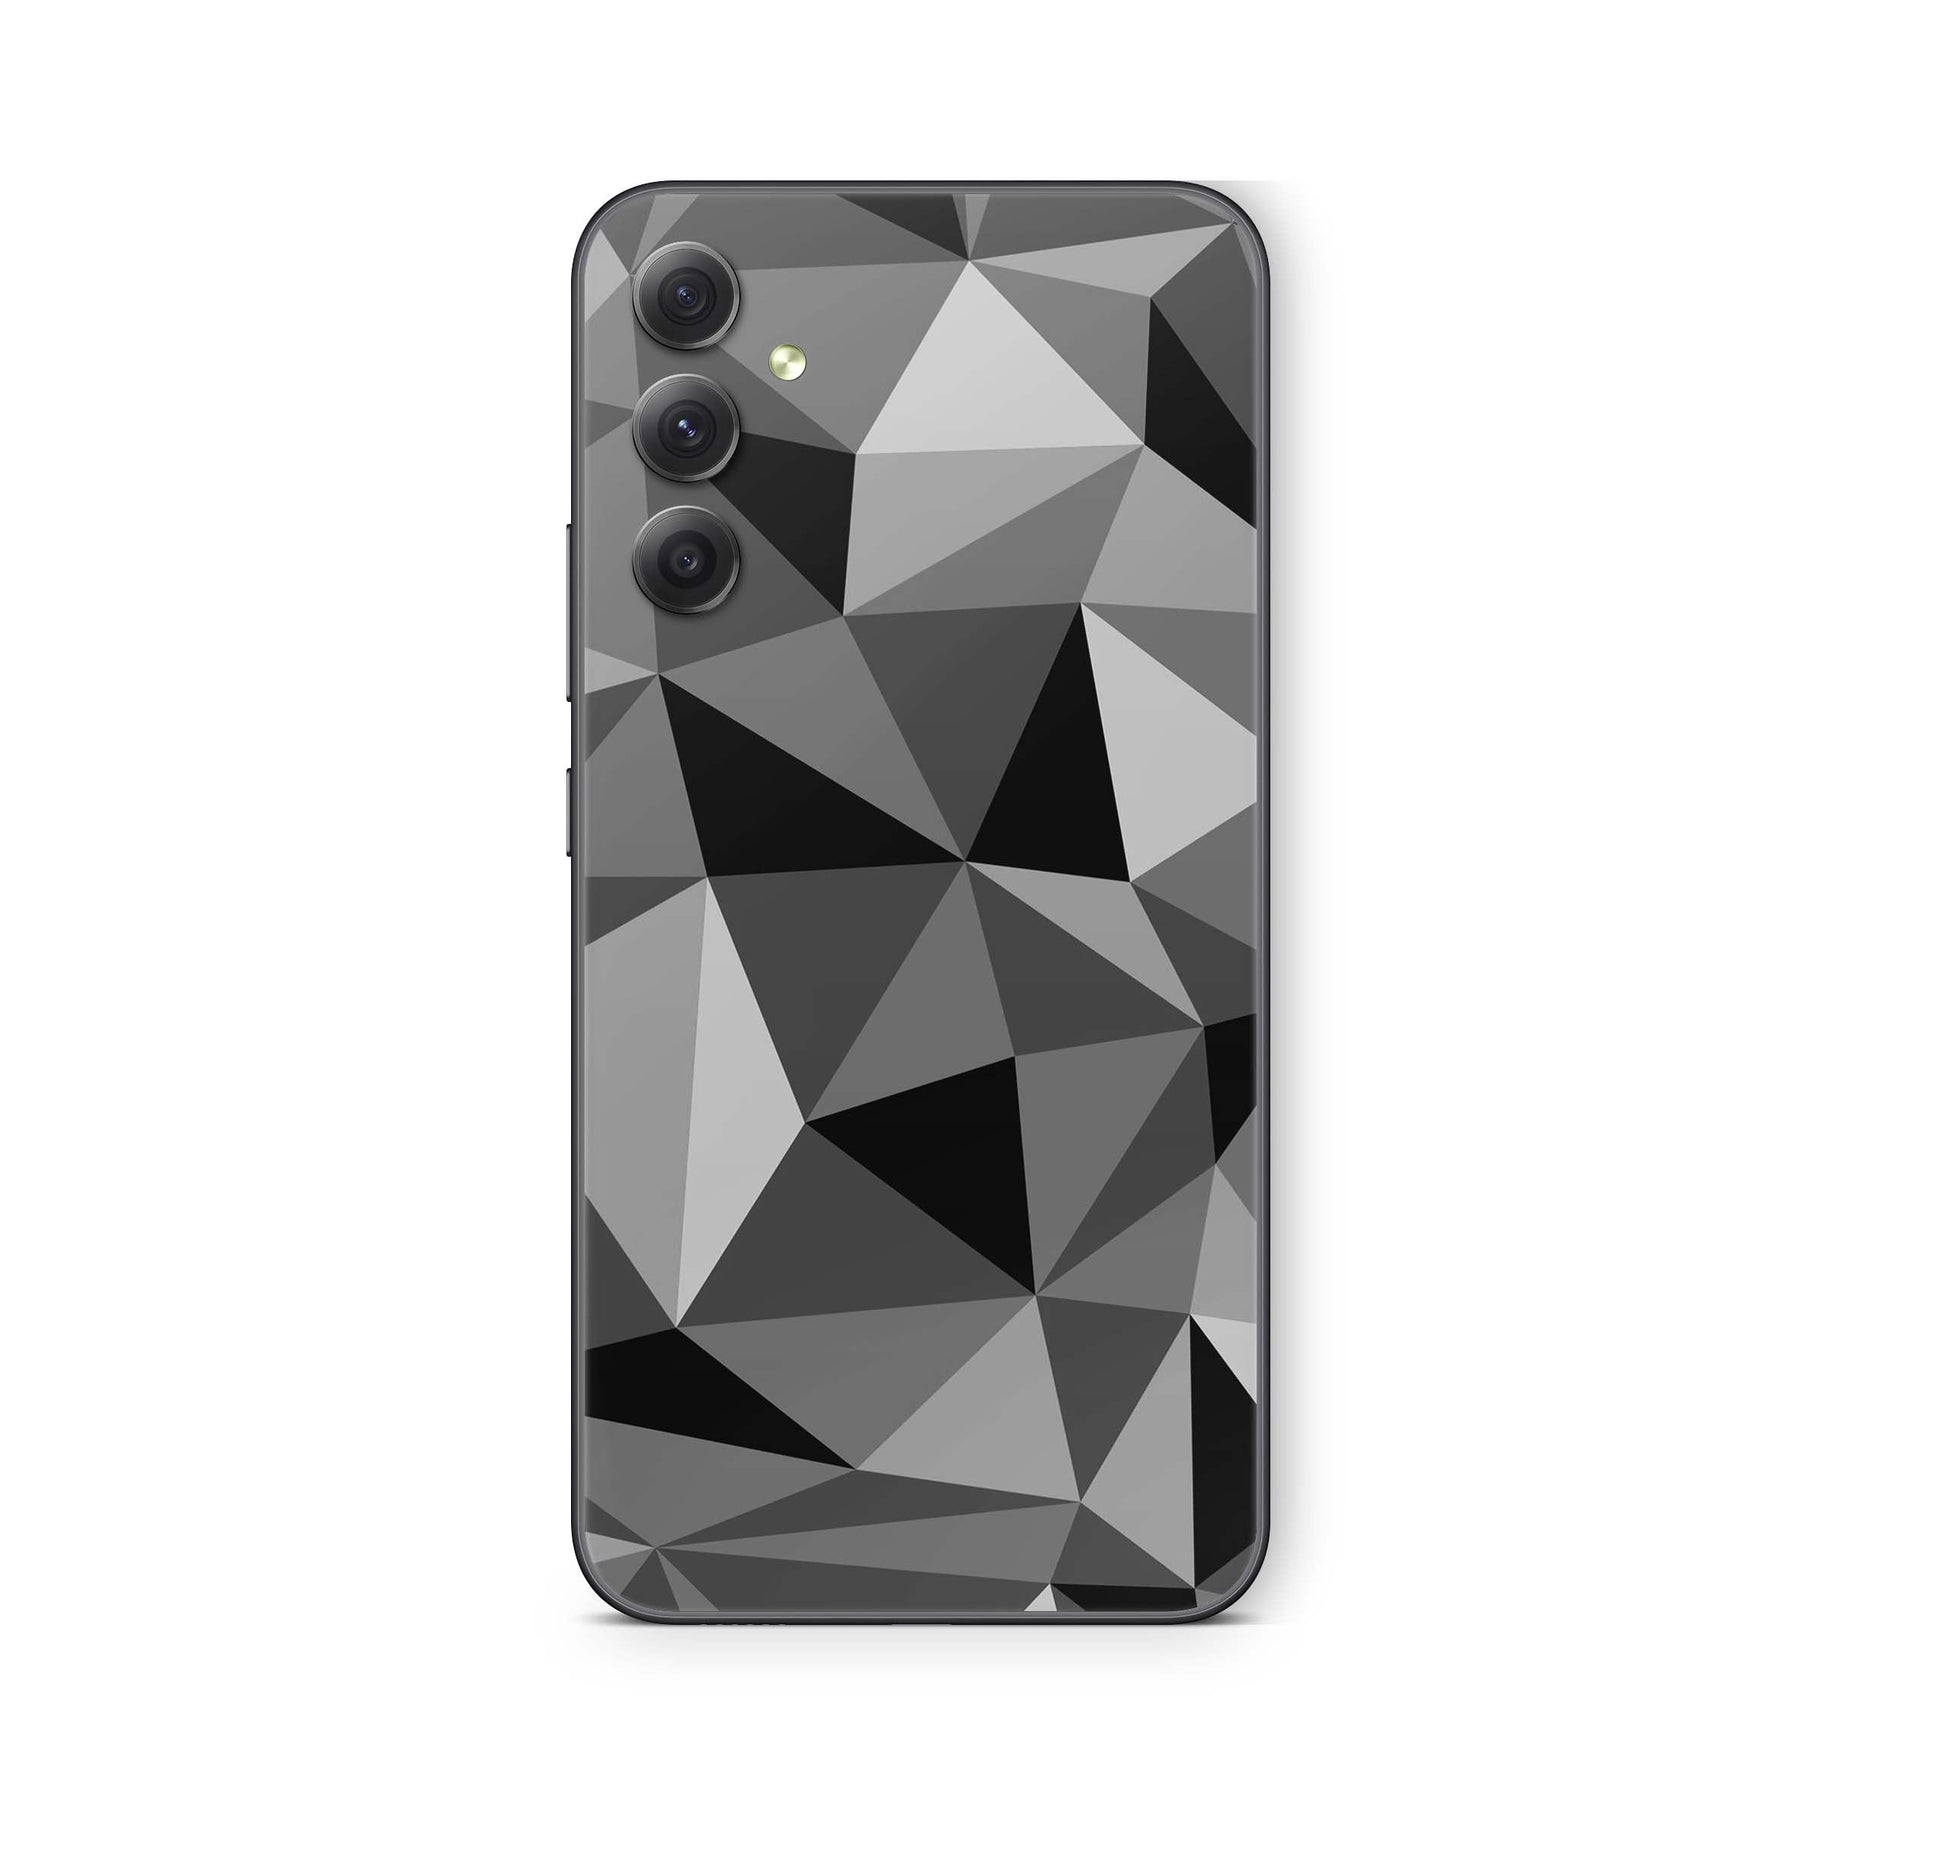 Samsung Galaxy A21s Skin Schutzfolie Aufkleber Skins Design Polygrey Elektronik-Sticker & -Aufkleber skins4u   